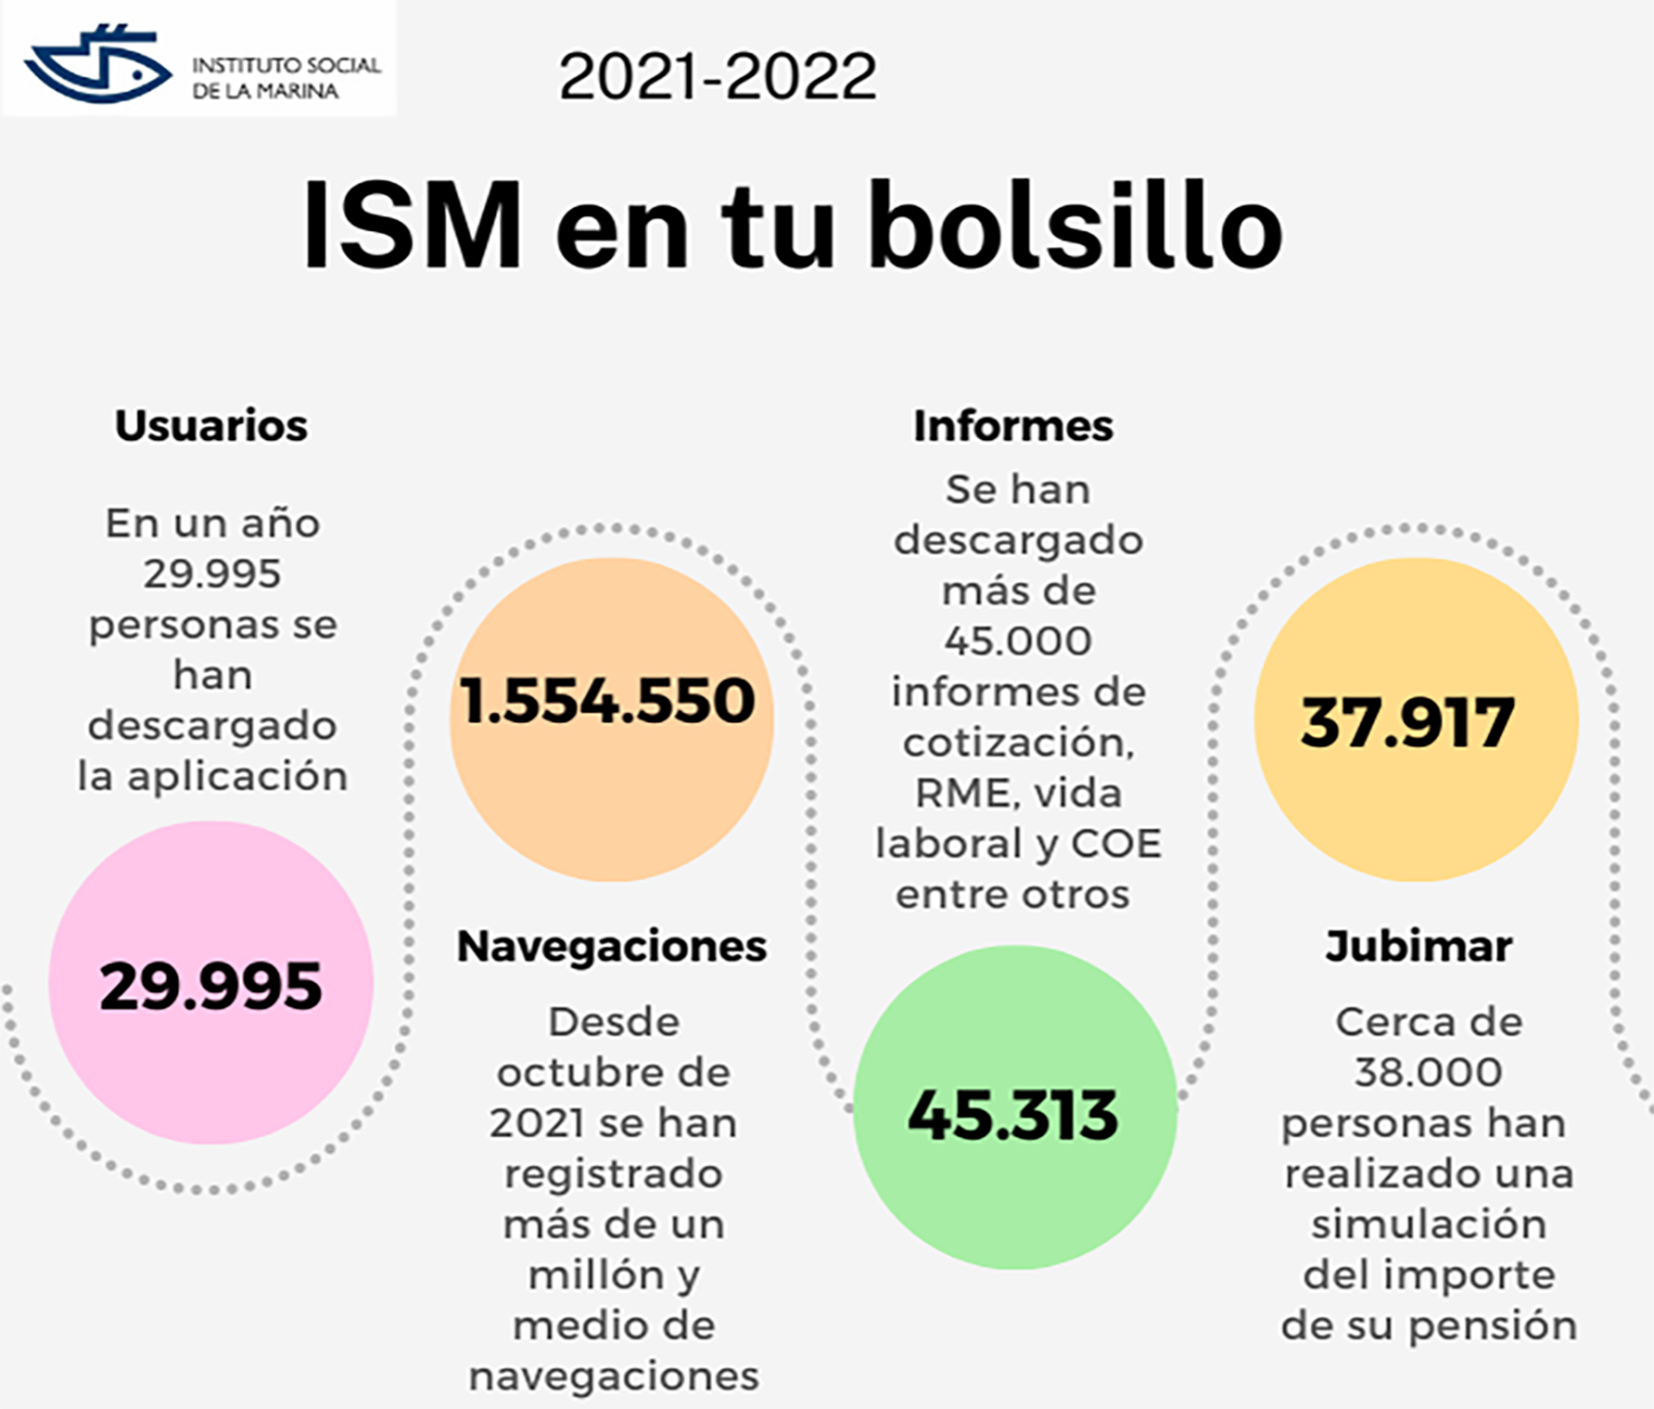 gráfico sobre estadísticas de uso de la aplicación Ism en tu bolsillo correspondientes al periodo 2021-2022